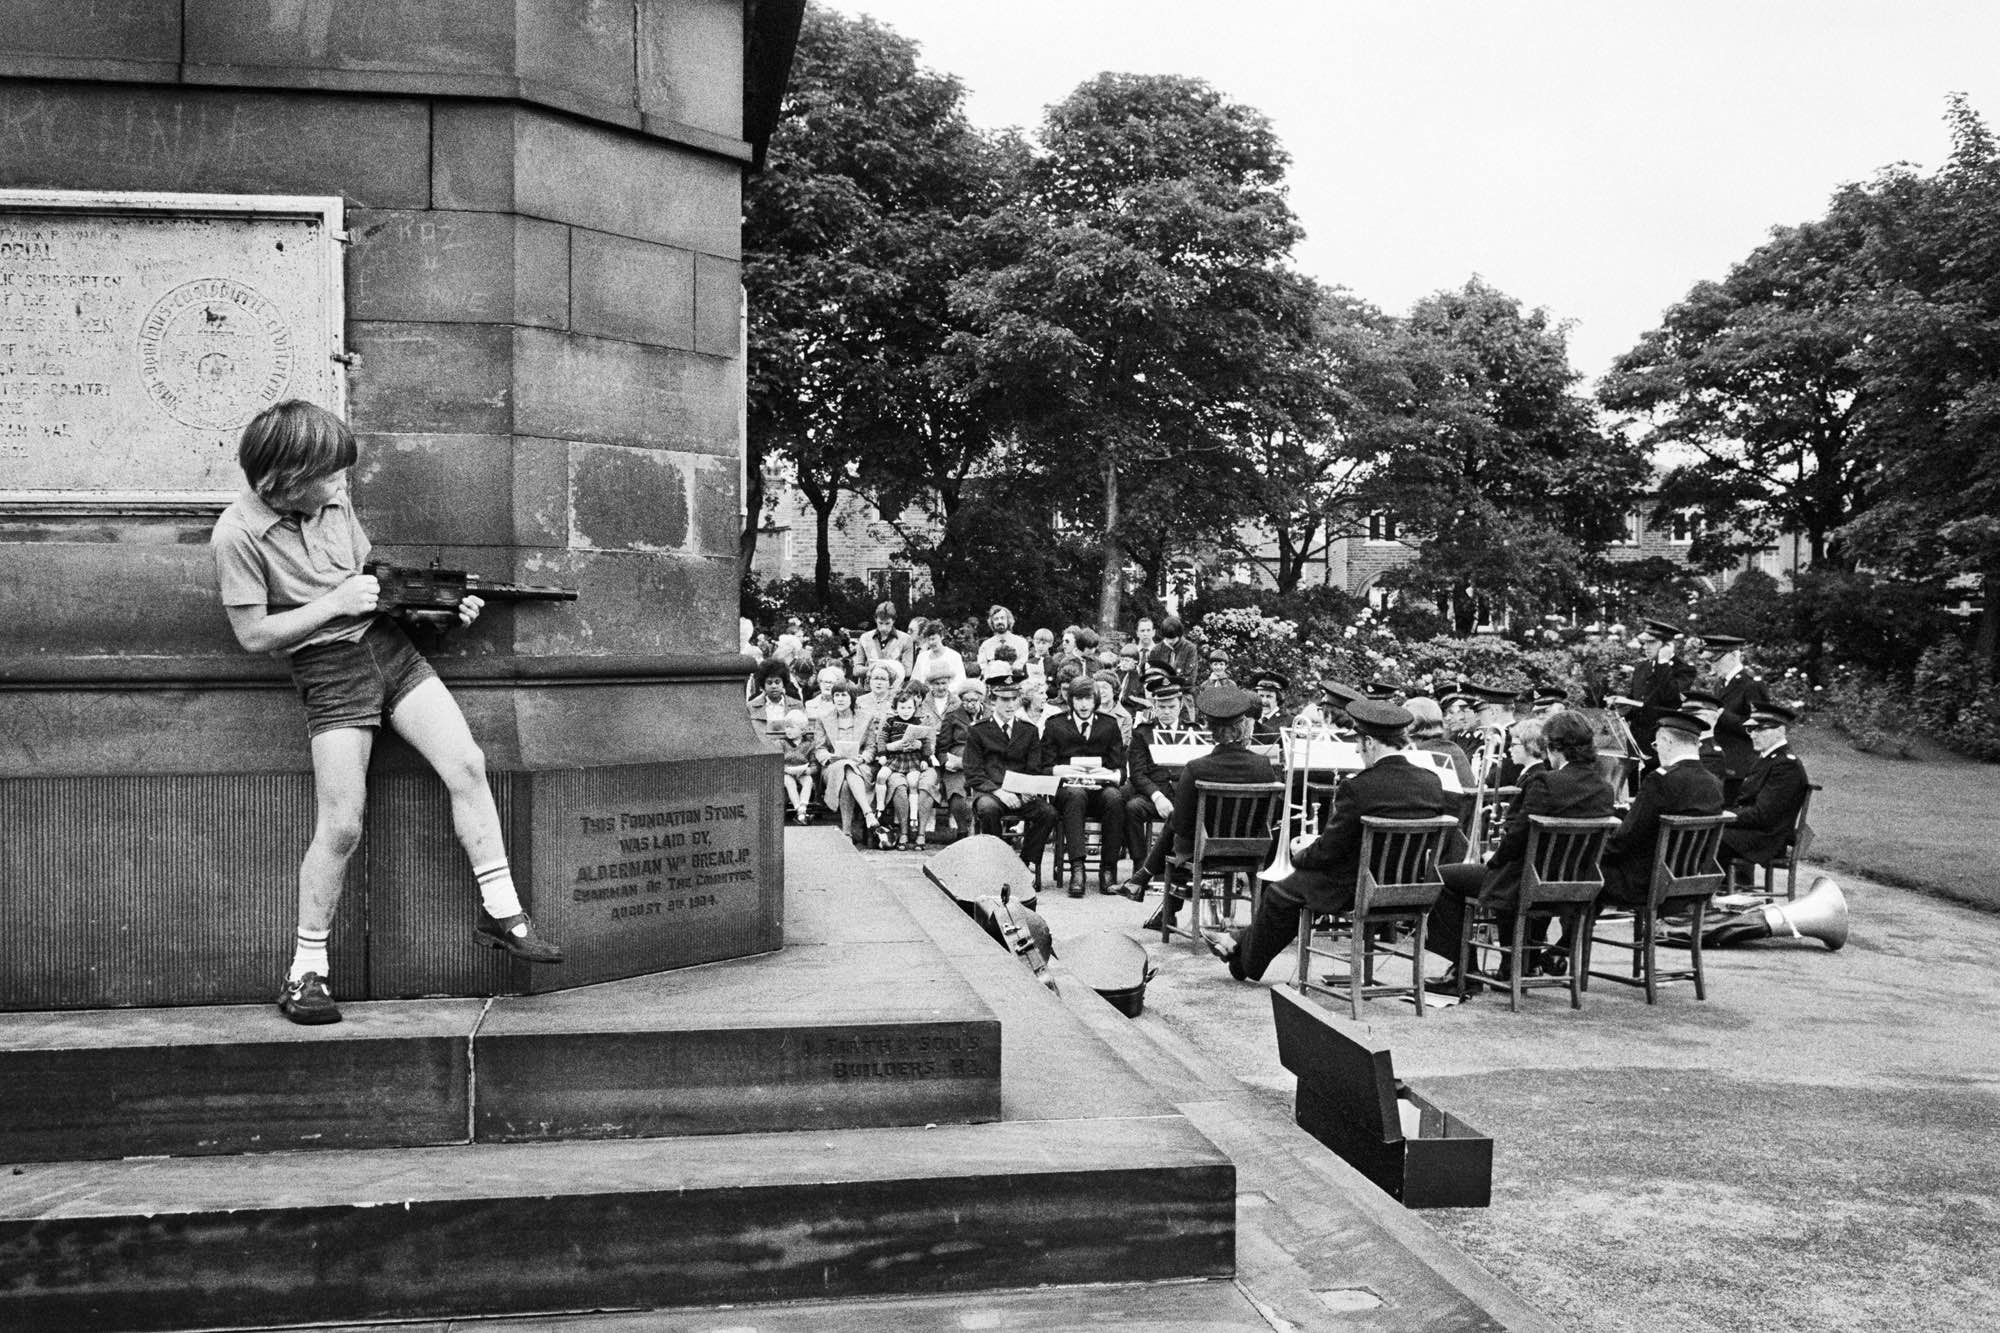 Martin Parr. Tres capelles de la zona es reuneixen per celebrar una cerimònia a l’aire lliure, 1975-1980 © Martin Parr / Magnum Photos 